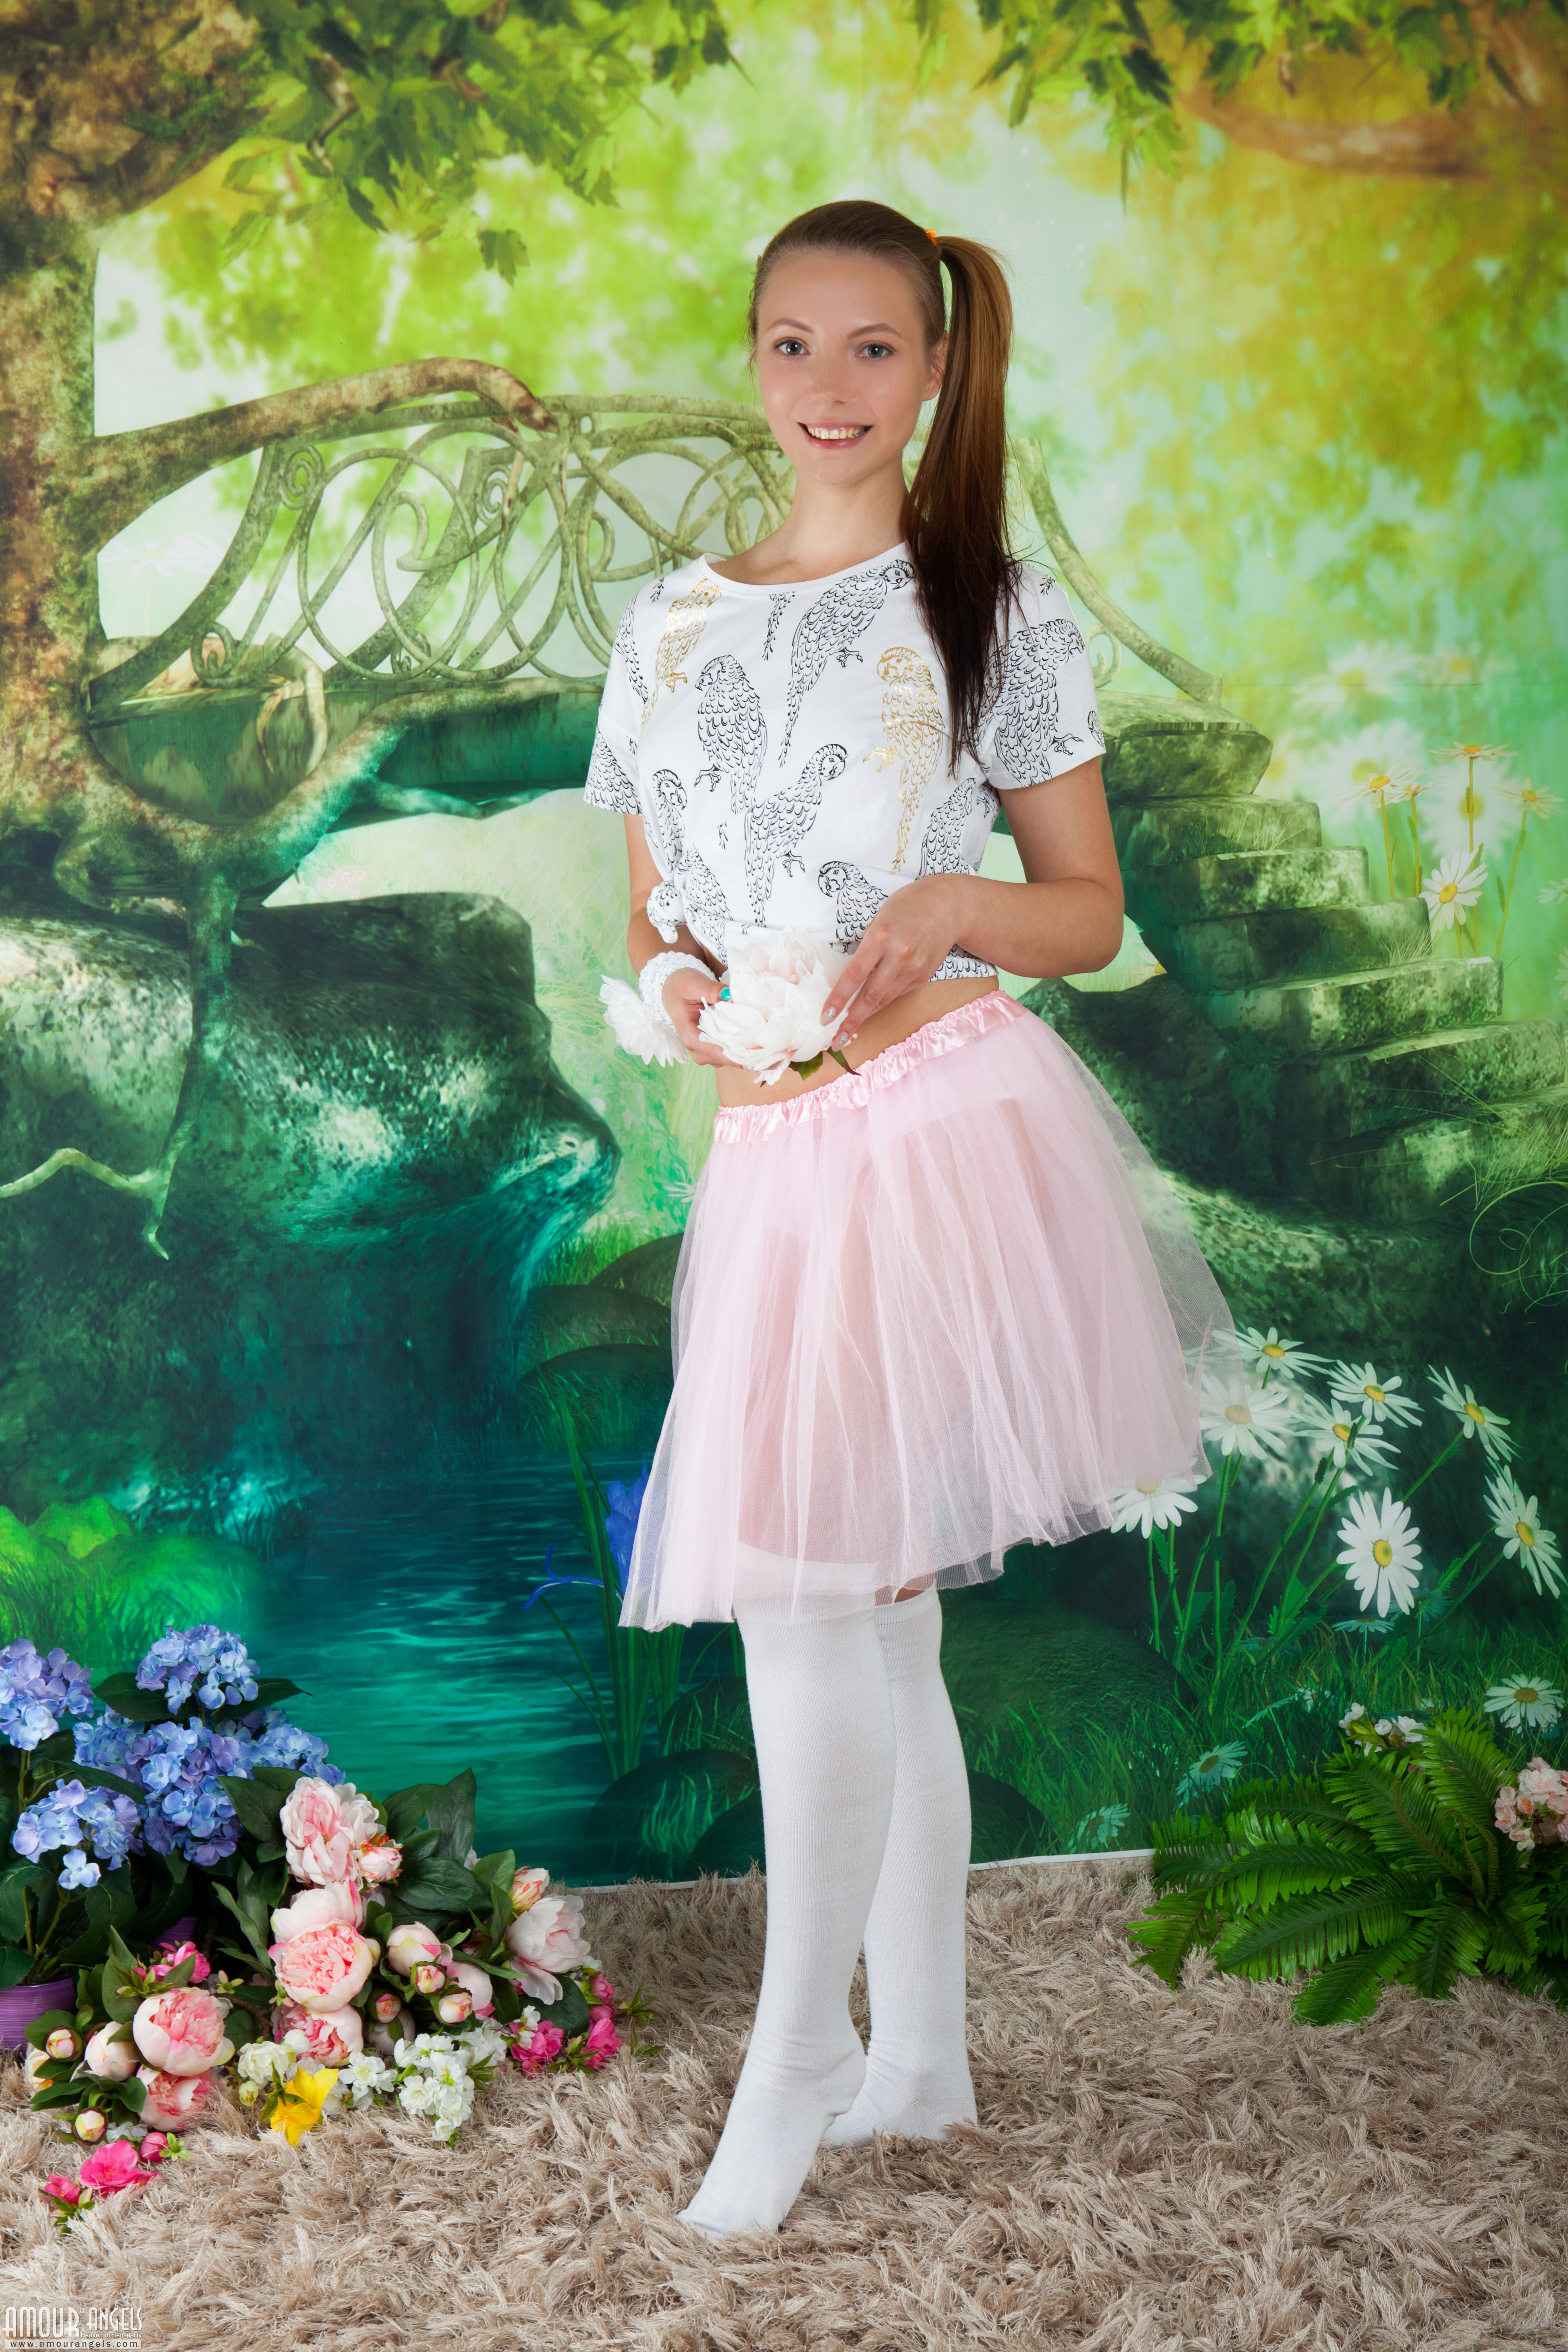 Watermarked Women Brunette Standing Side Ponytail White Socks Socks Tiptoe Dress White Dress Flowers 3744x5616